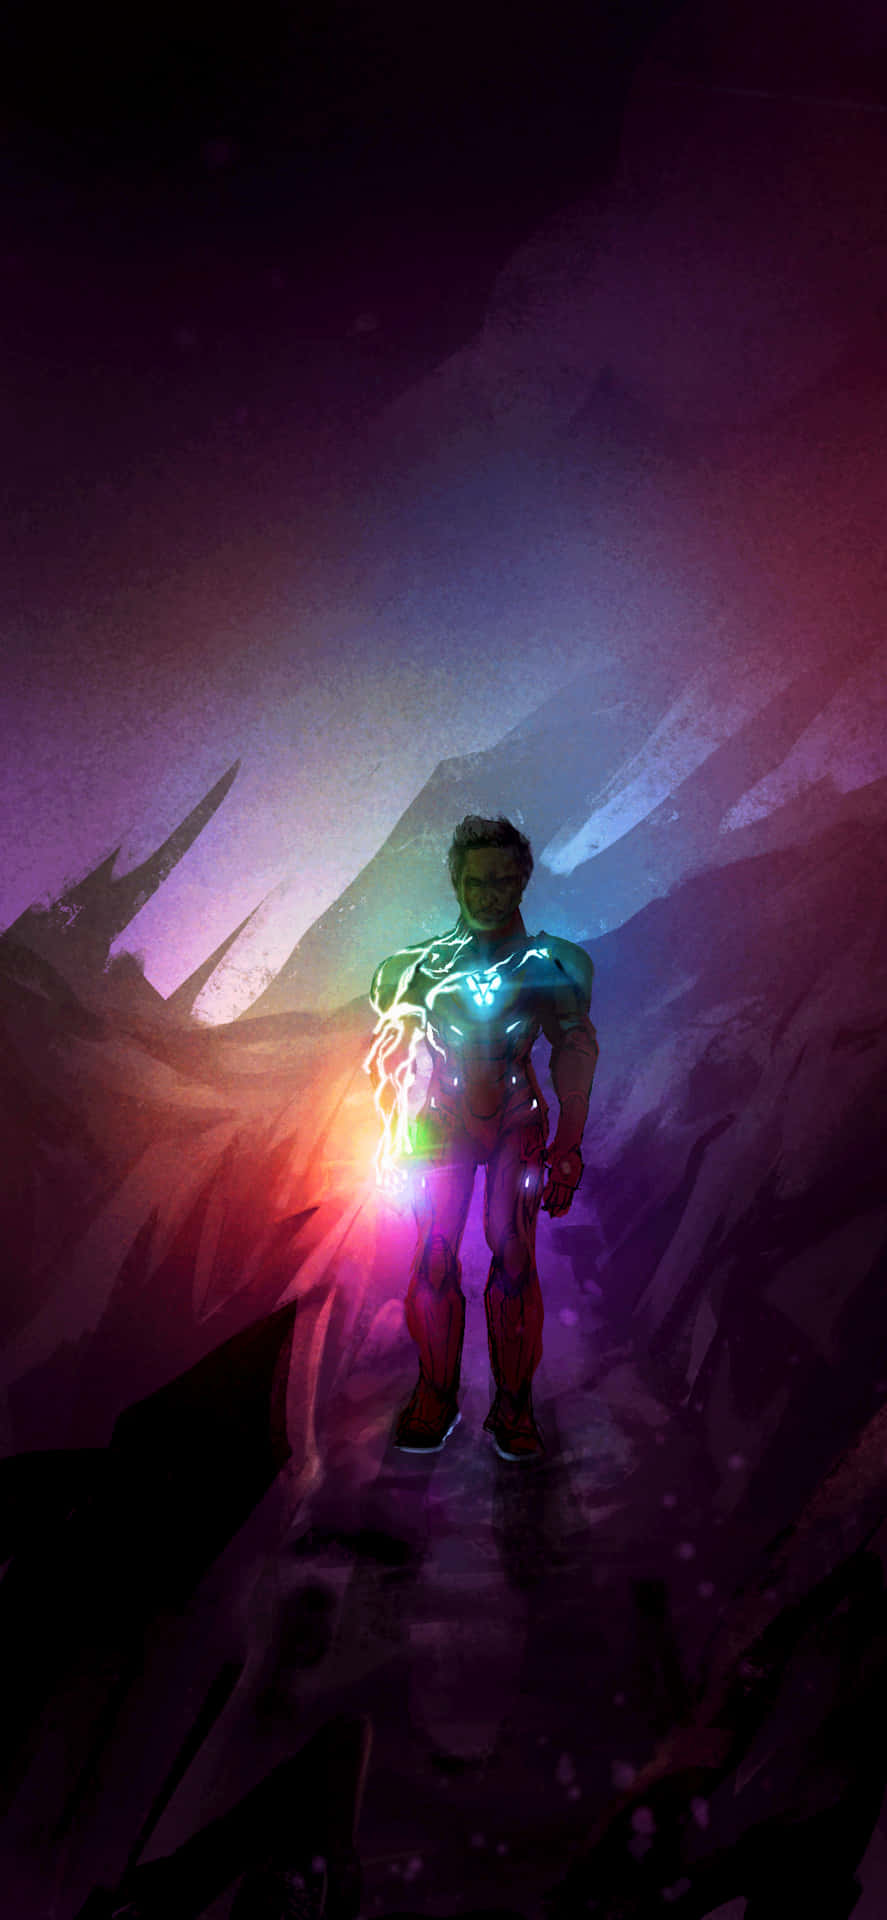 Gør dig klar til at redde verden med Iphone Xs Marvel's Avengers Edition!